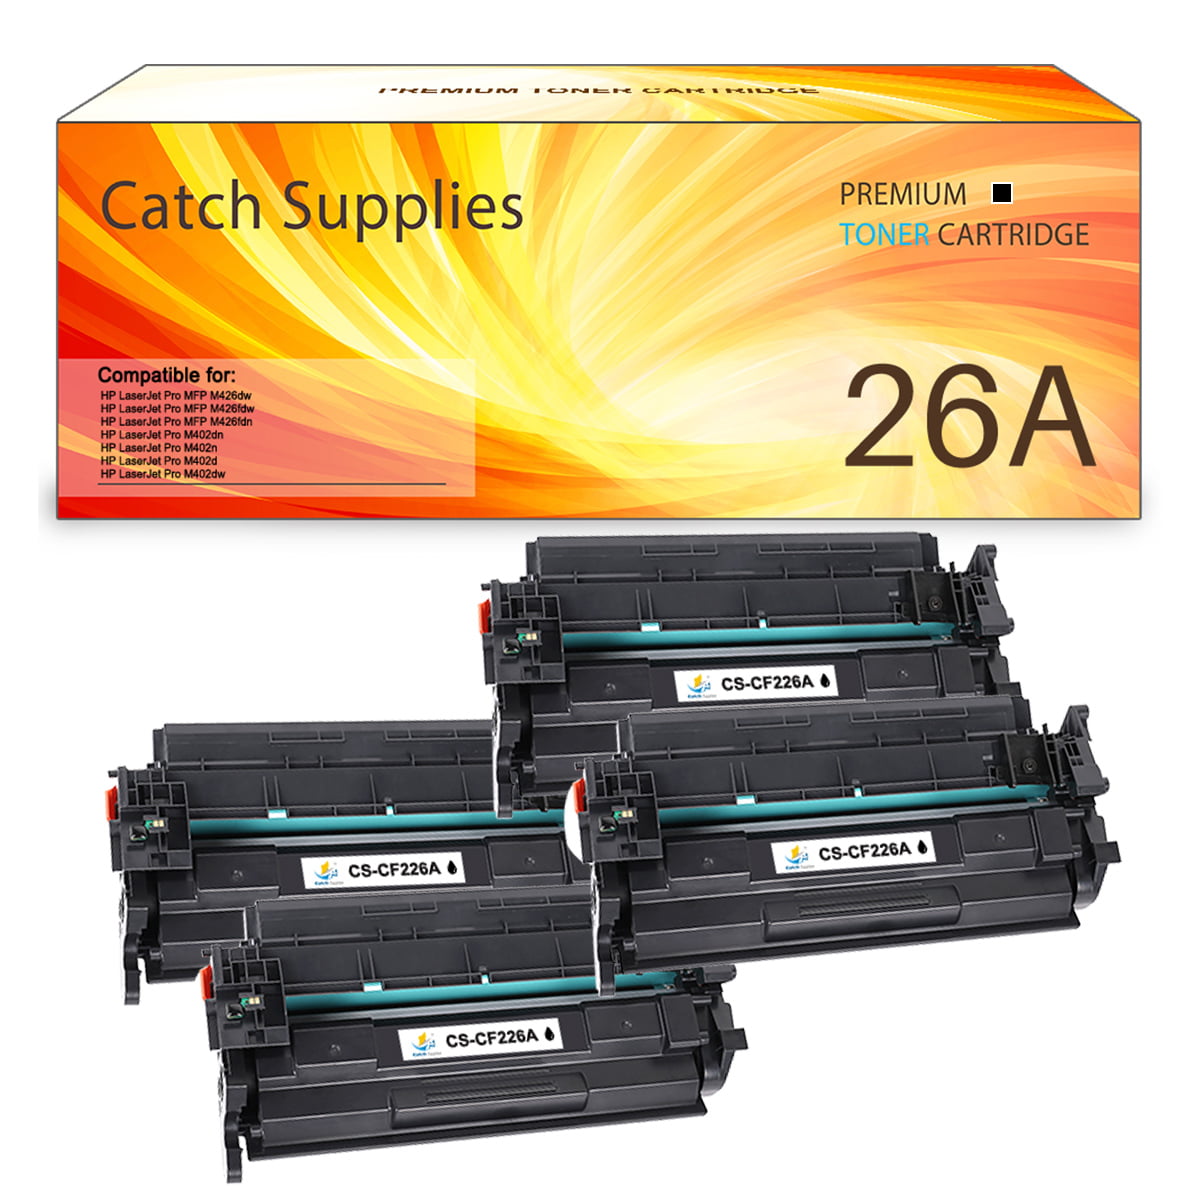 Catch Supplies 2-Pack Compatible Toner for HP 26A LaserJet Pro MFP M426dw M426fdw M426fdn M402dn M402dw Printer Ink (Black) - Walmart.com